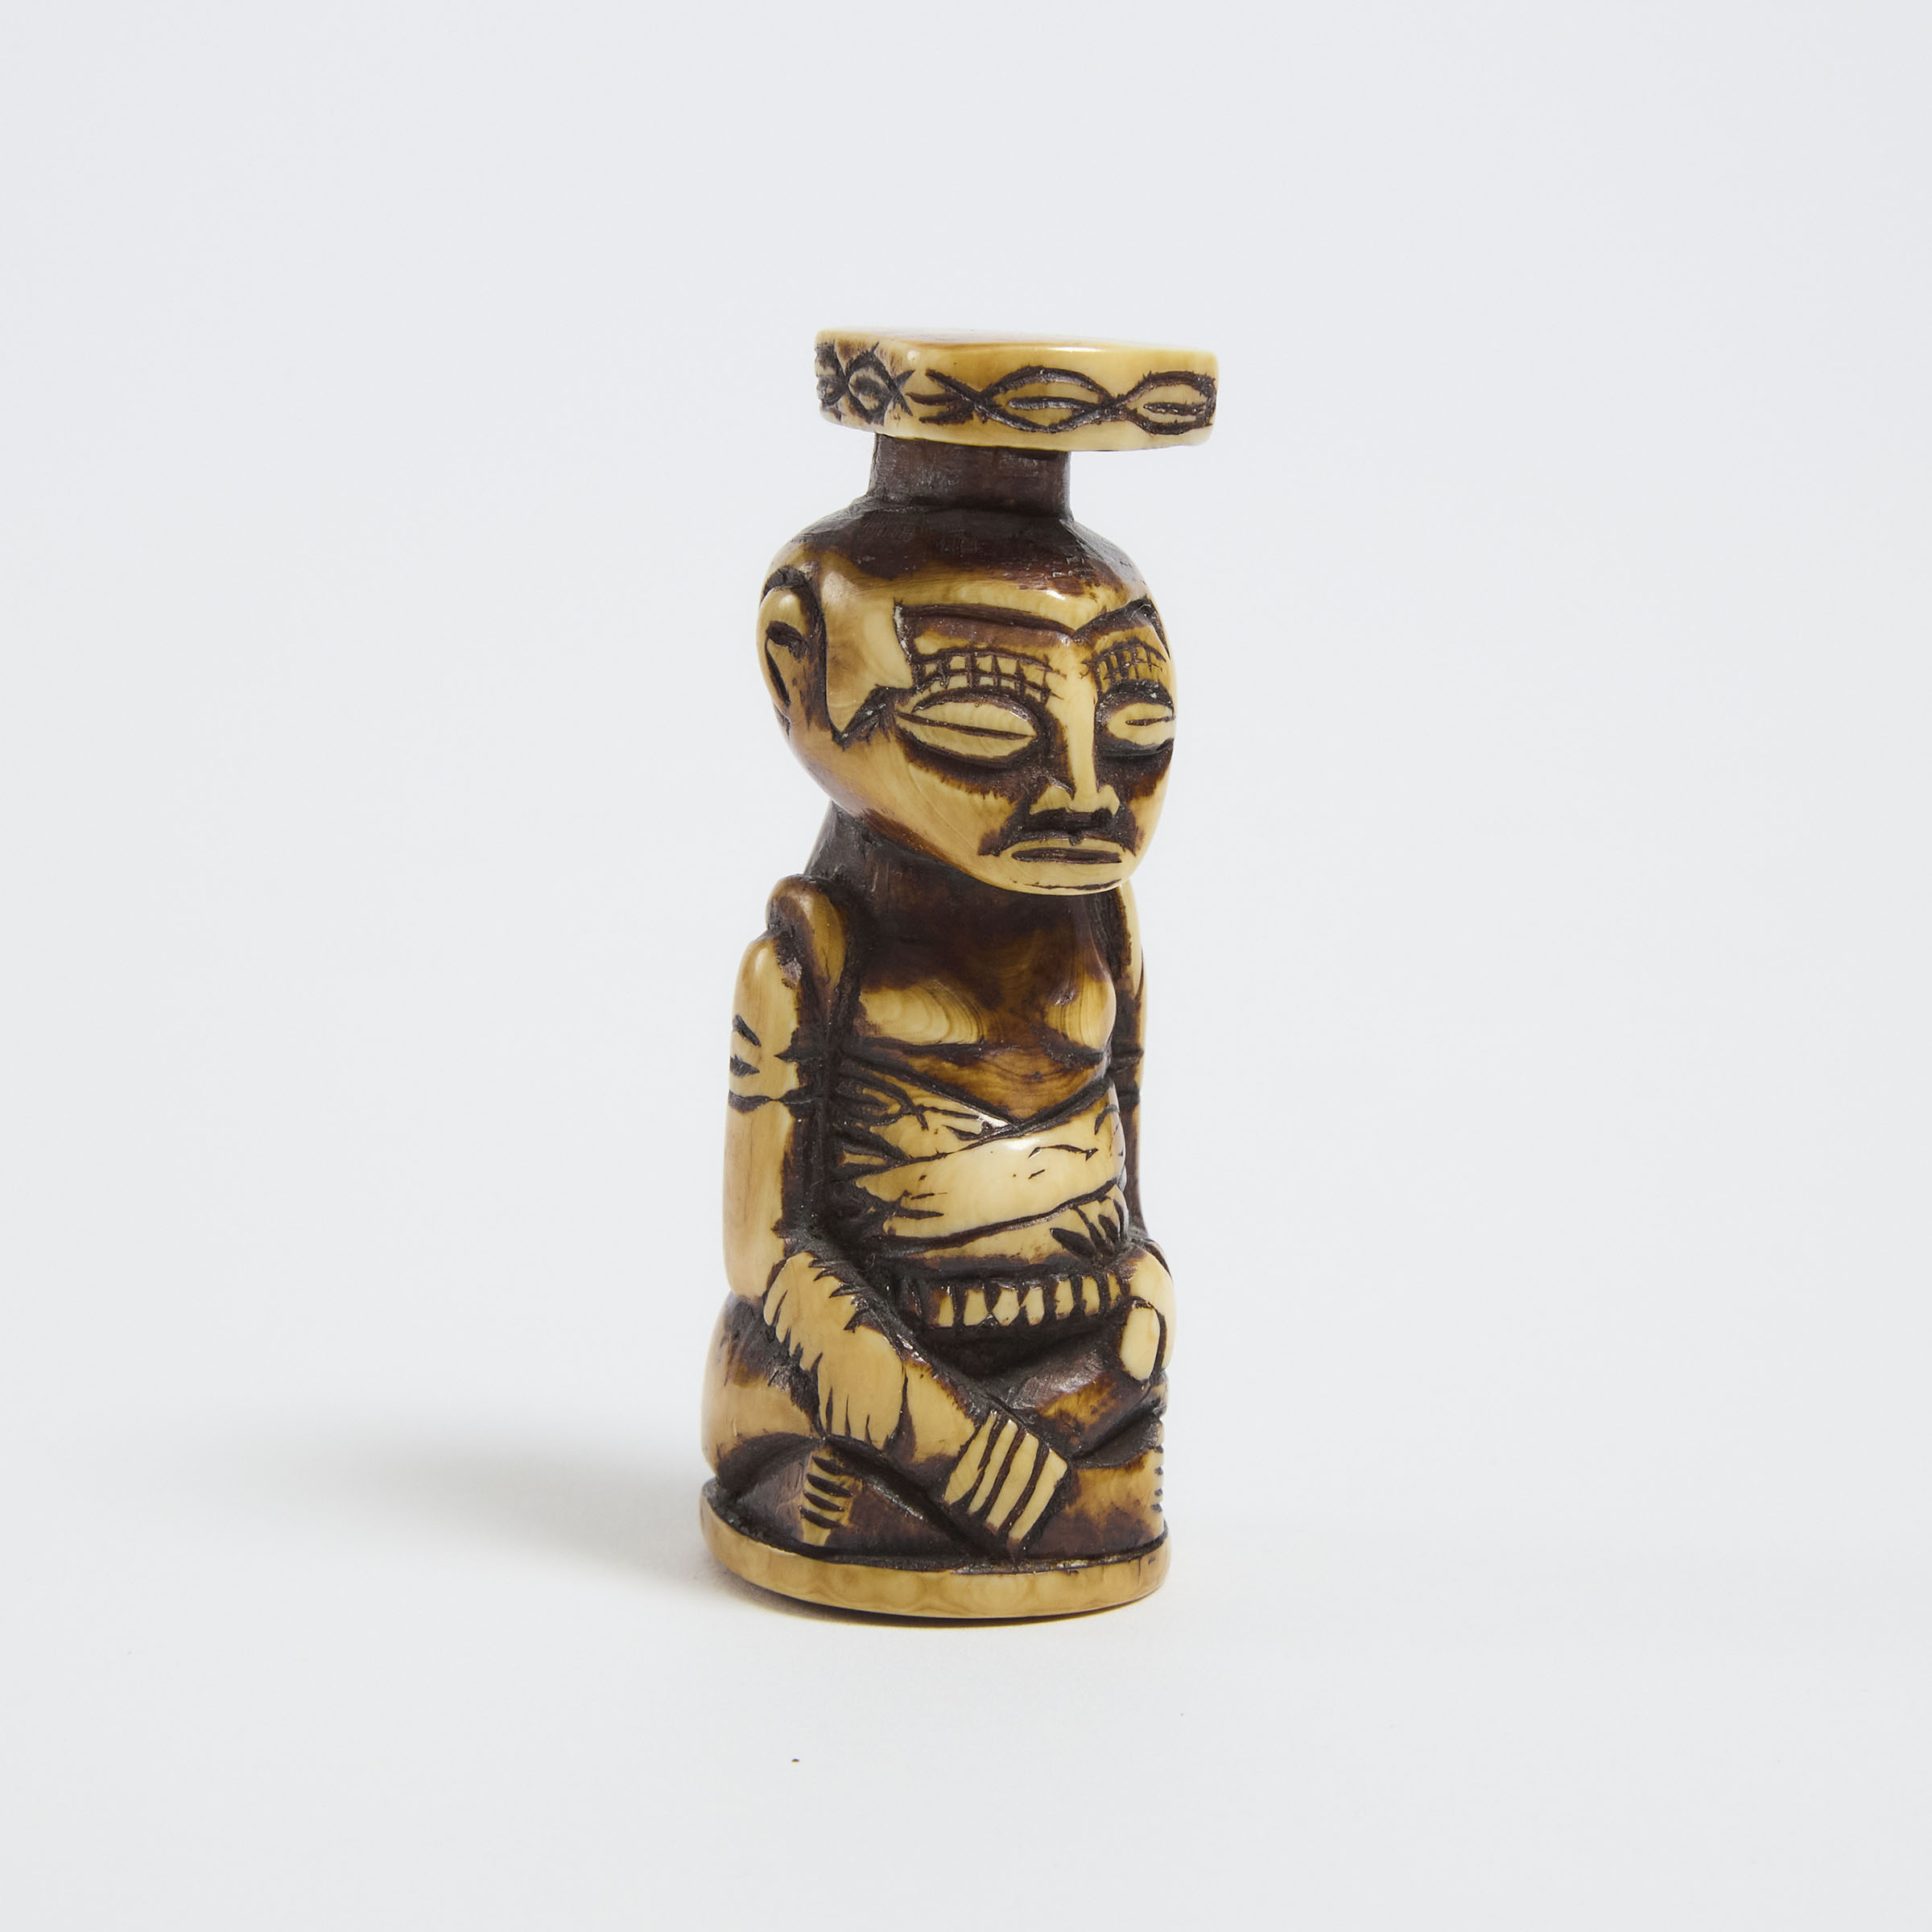 Luba Carved Ivory Seated Figure  2fb0af8